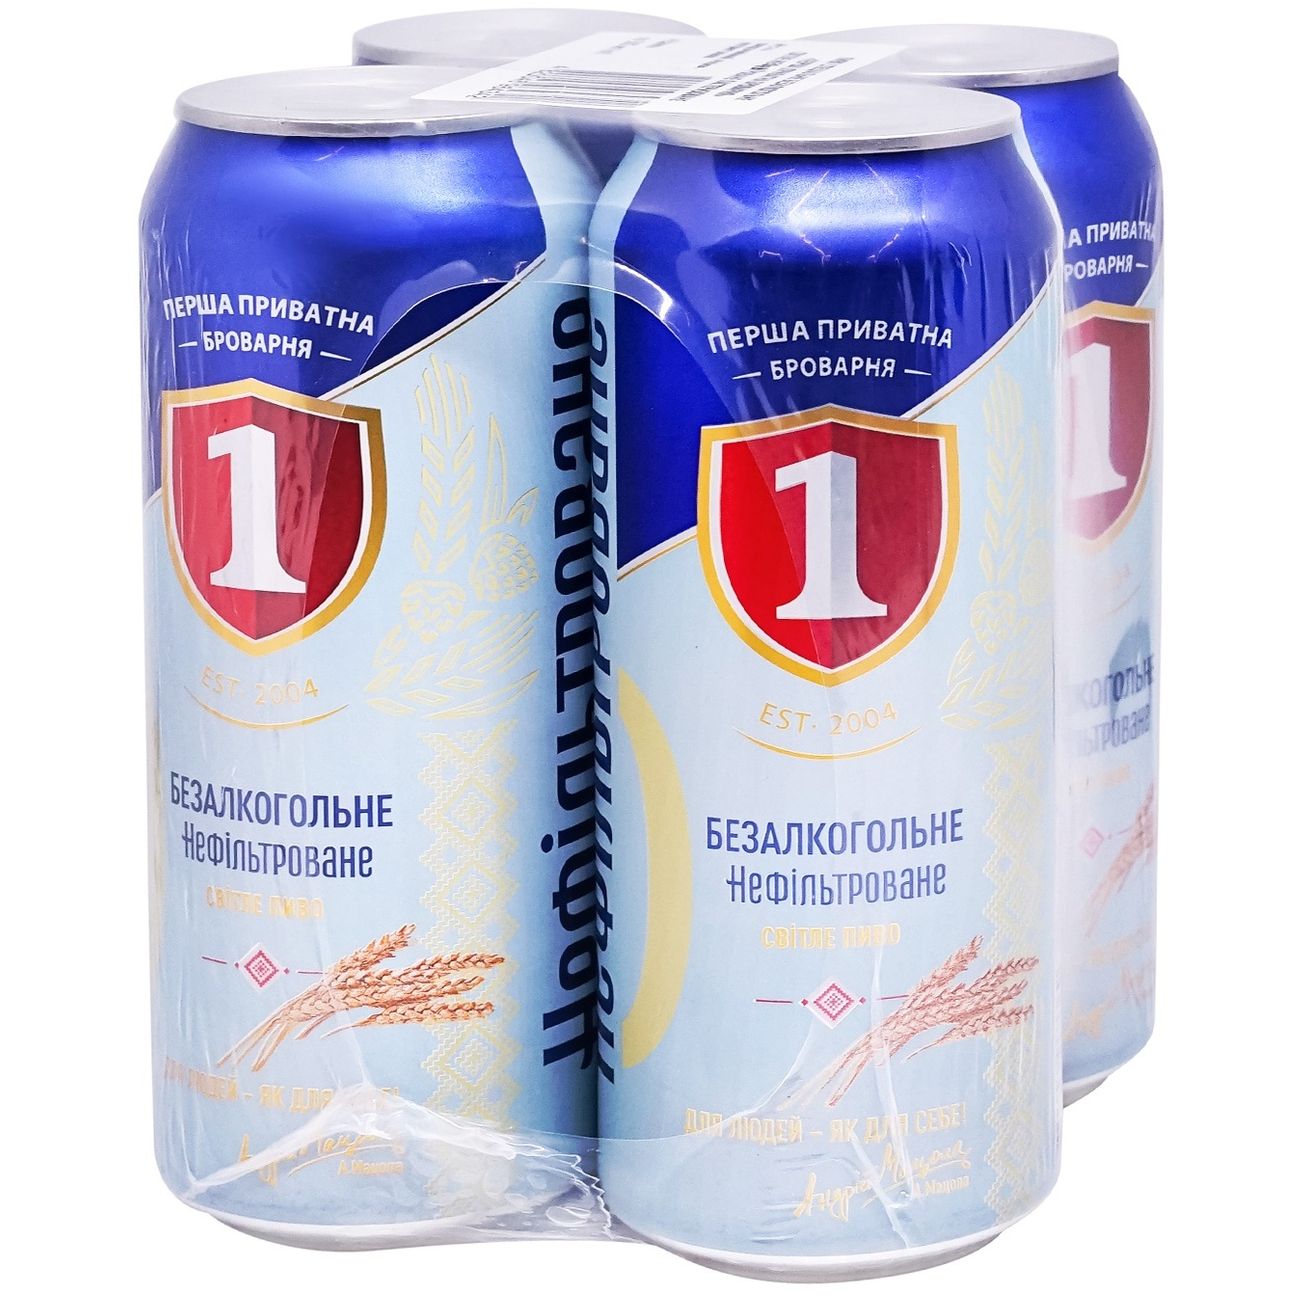 Пиво безалкогольное Перша приватна броварня светлое 0.5% 4 шт. х 0.5 л ж/б - фото 2